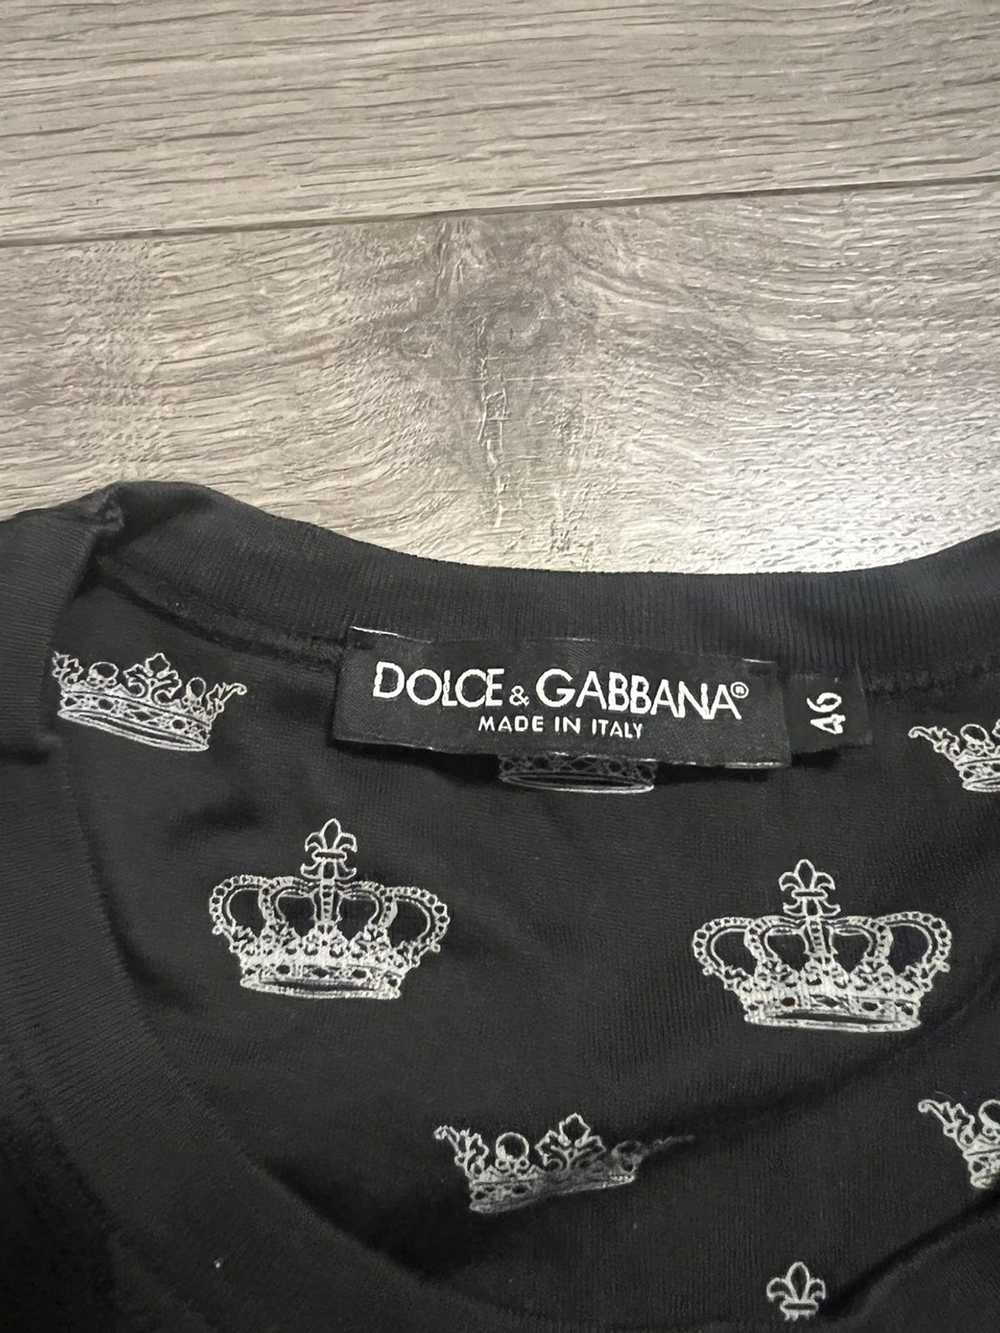 Dolce & Gabbana Dolce & Gabbana t-shirt - image 4